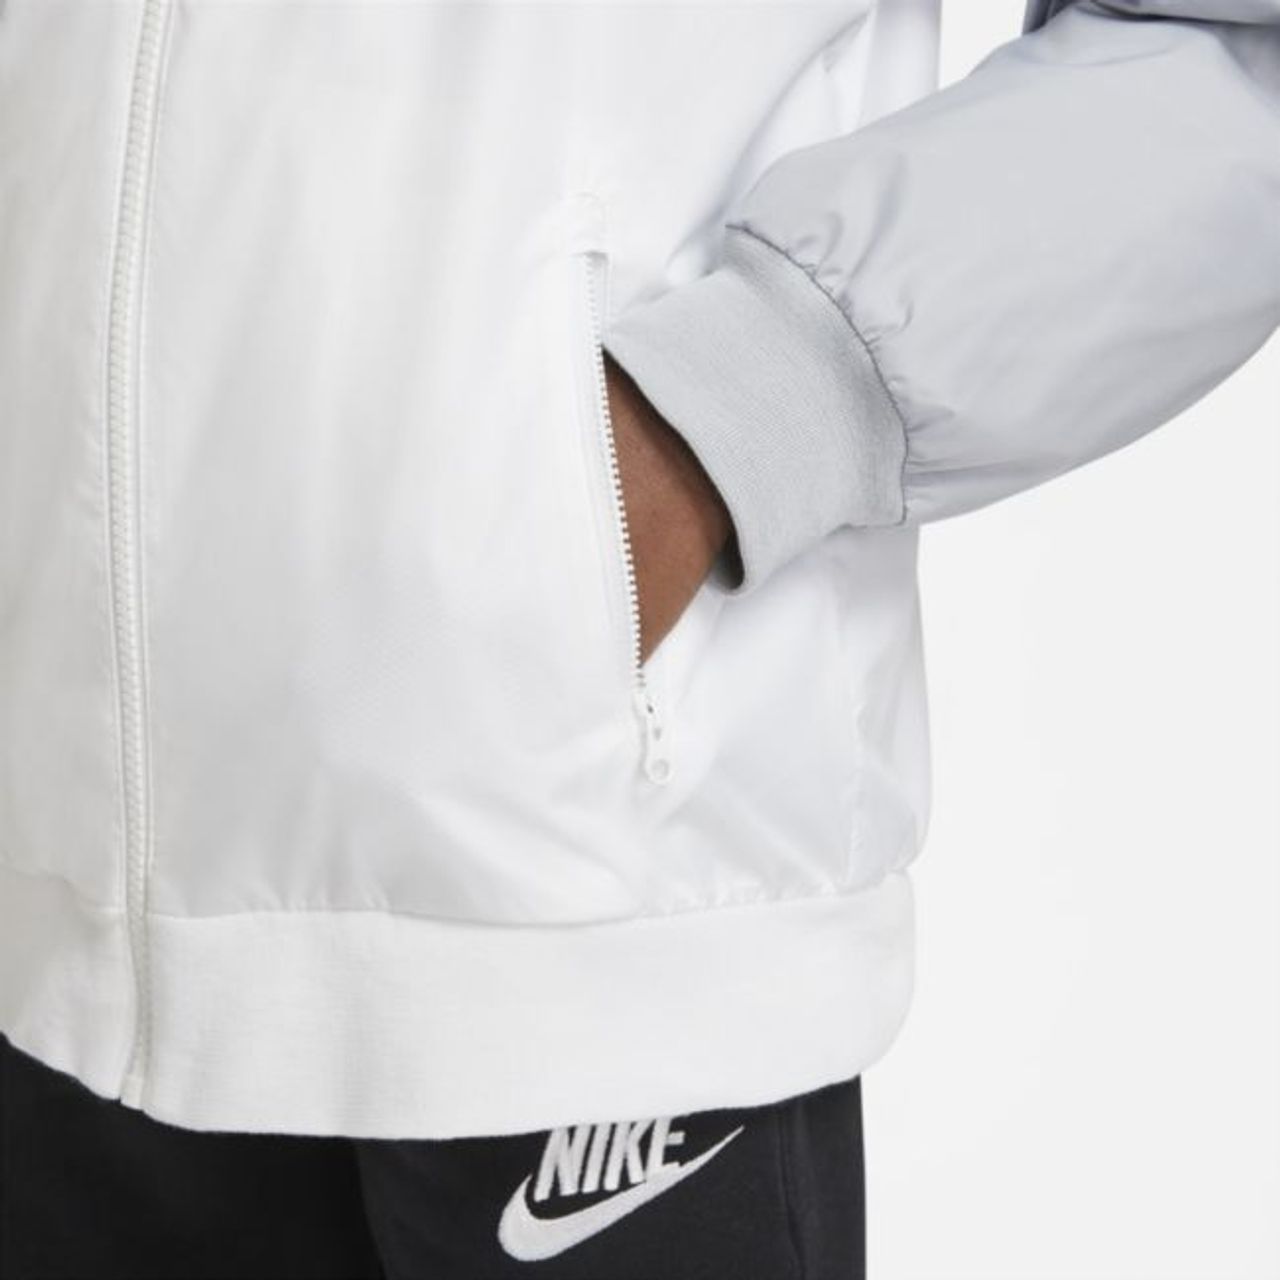 Nike Sportswear Windrunner Jacke für ältere Kinder (Jungen) - Weiß